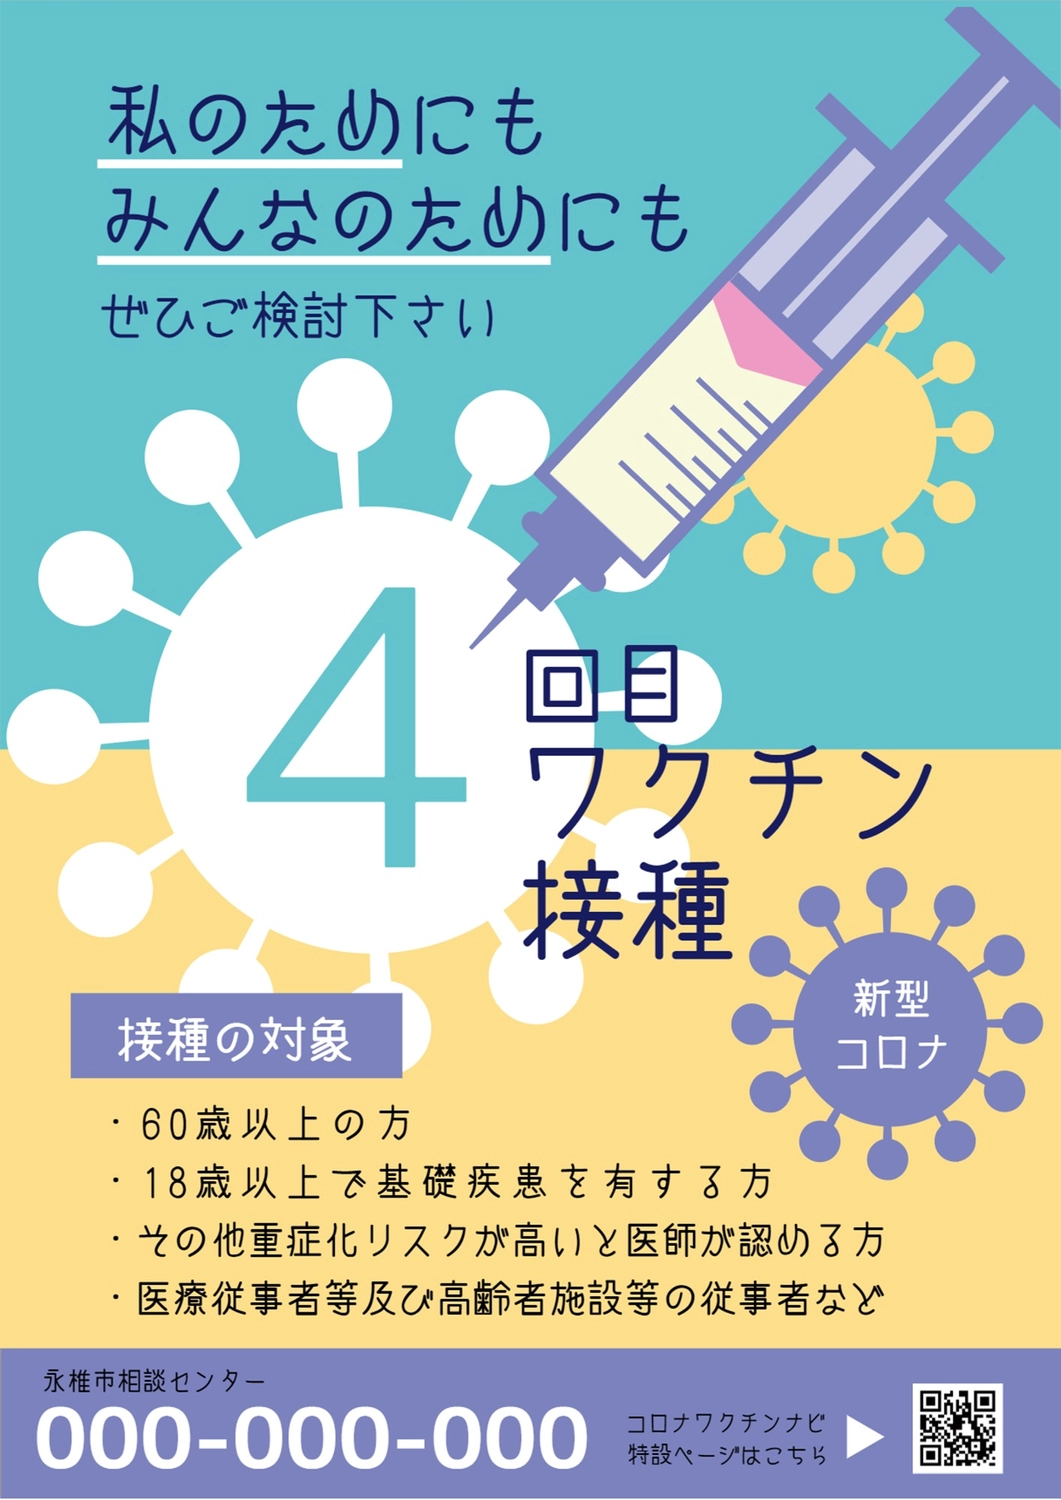 ウイルスに注射が刺さっているイラストの4回目ワクチン接種を推奨するポスター

, qr code, corona, prevention, Poster template